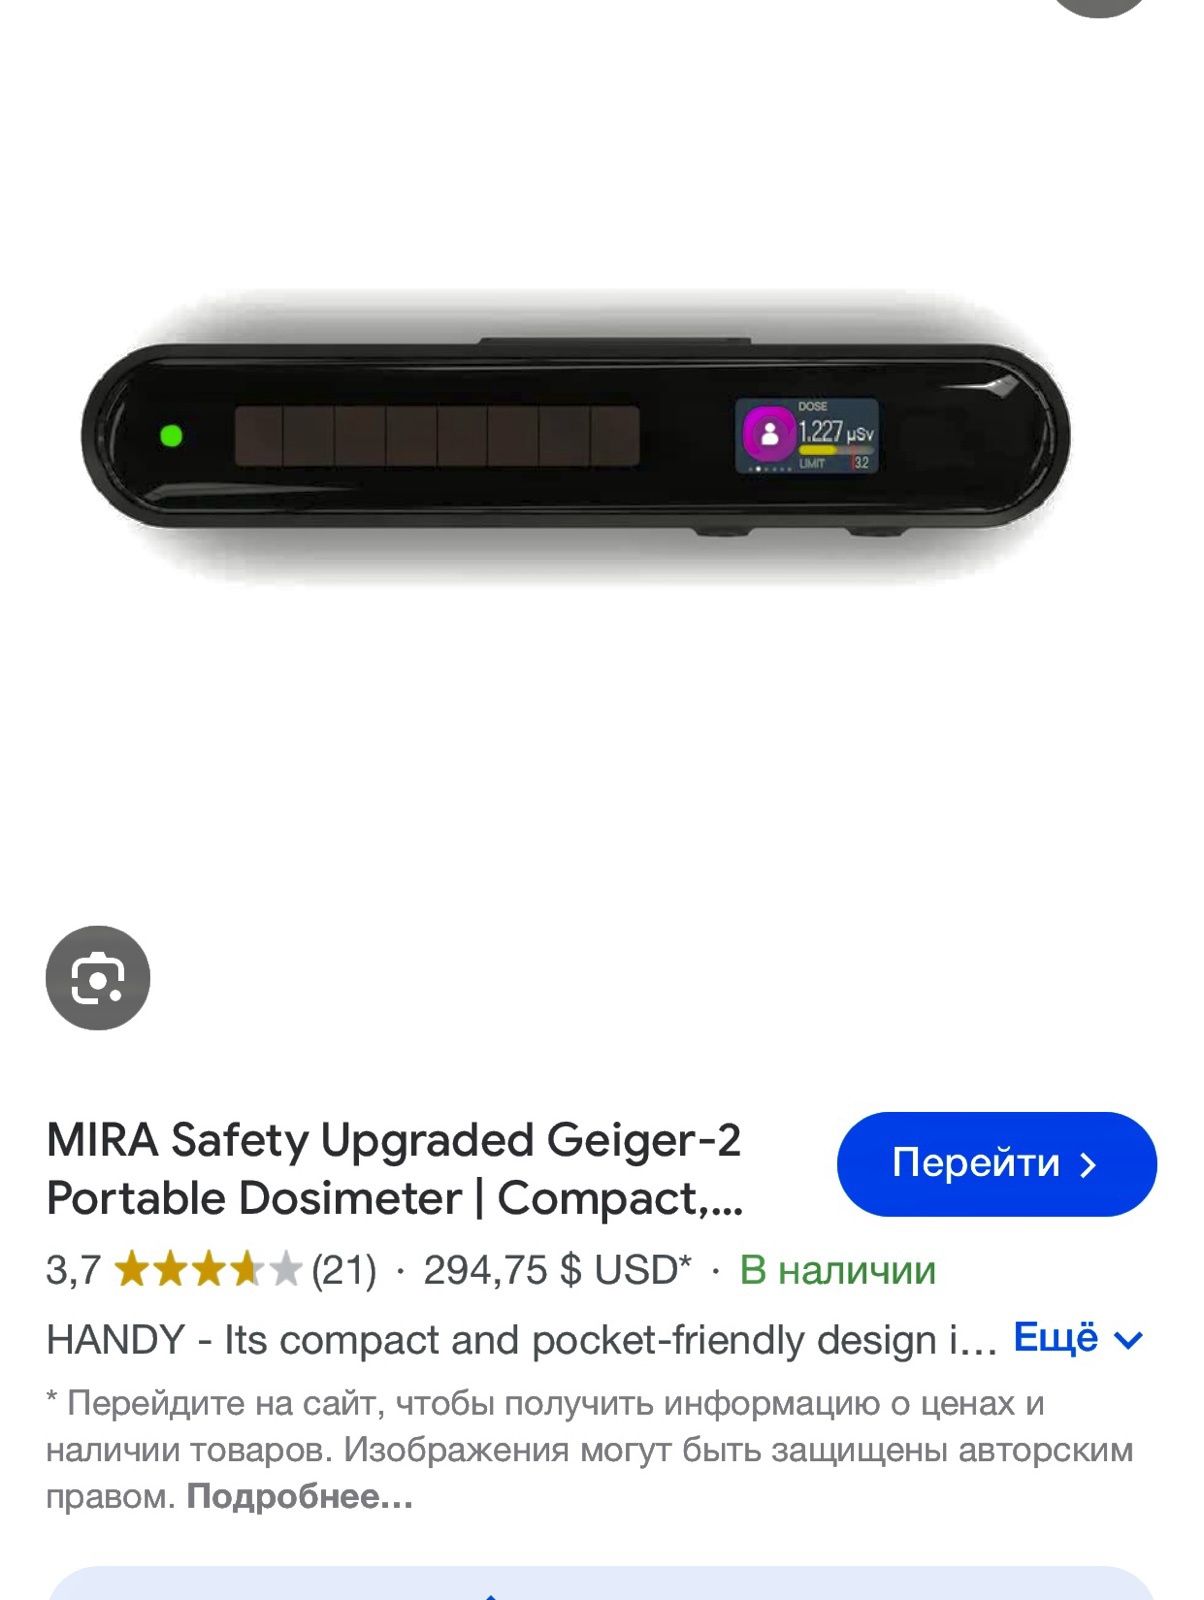 Дозиметр детектор ядерного излучения MIRA Safety Geiger-2